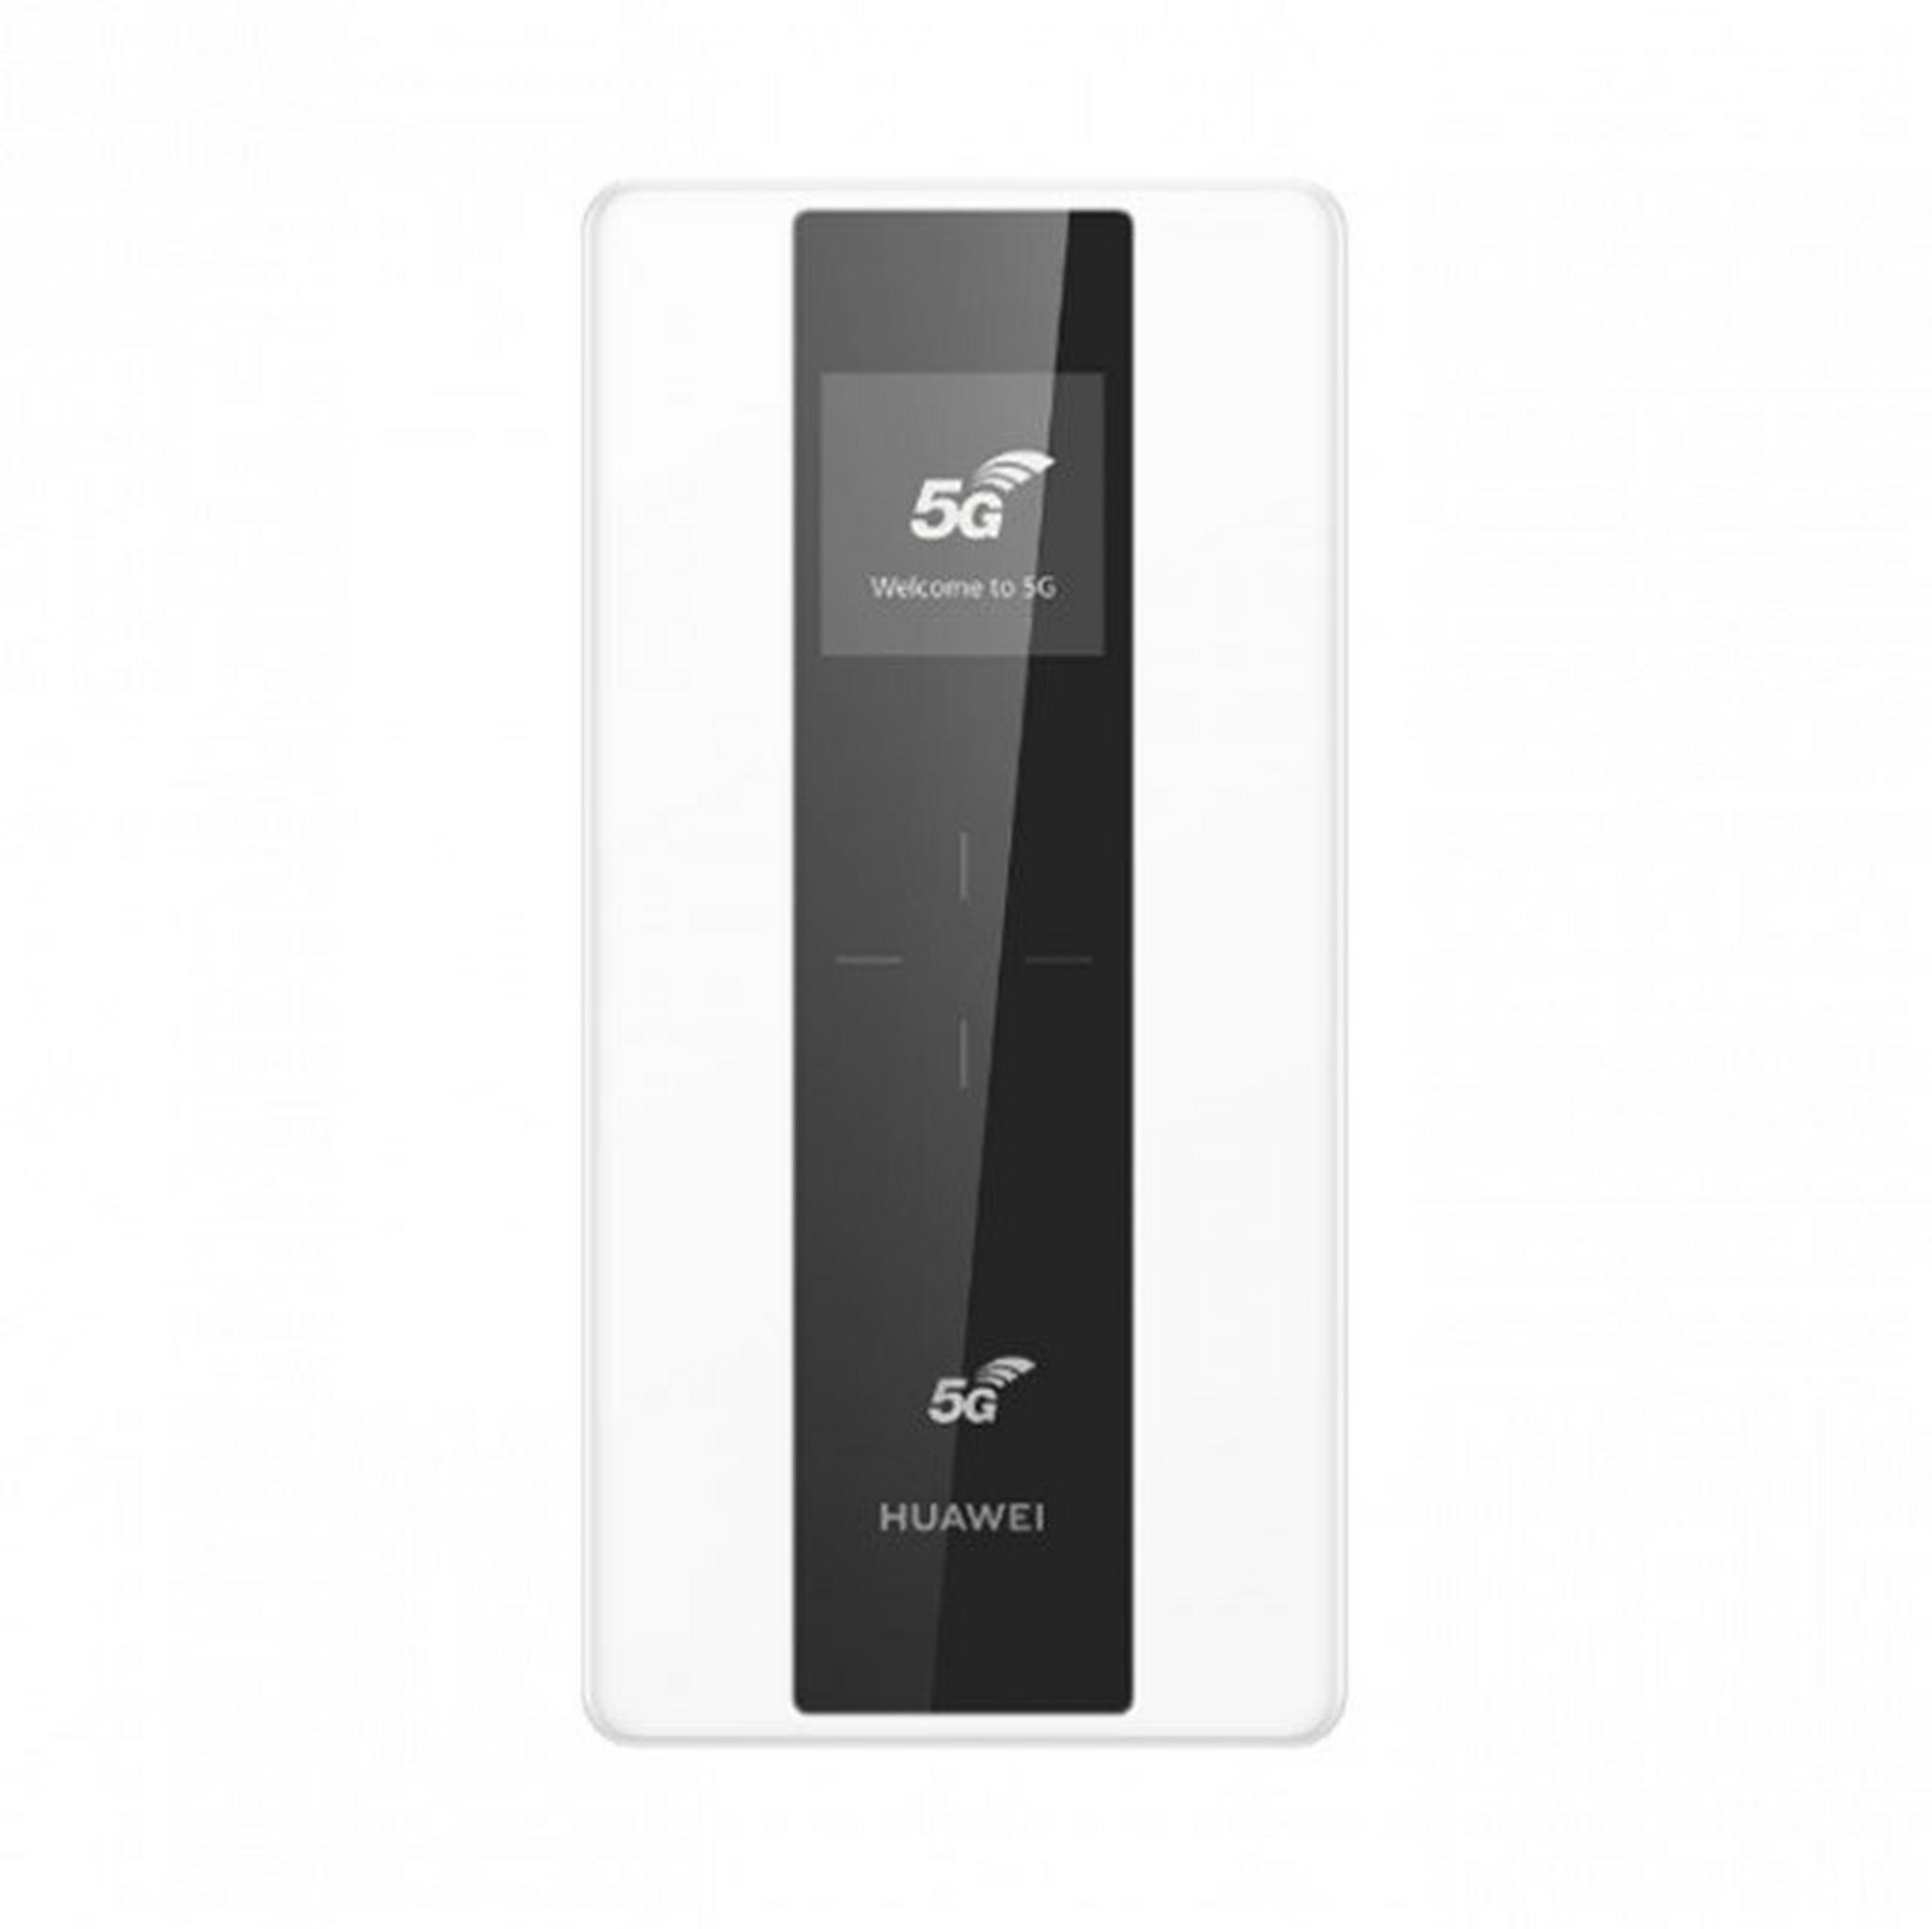 Huawei 5G Mobile WiFi - White (E6878-370-WHT)